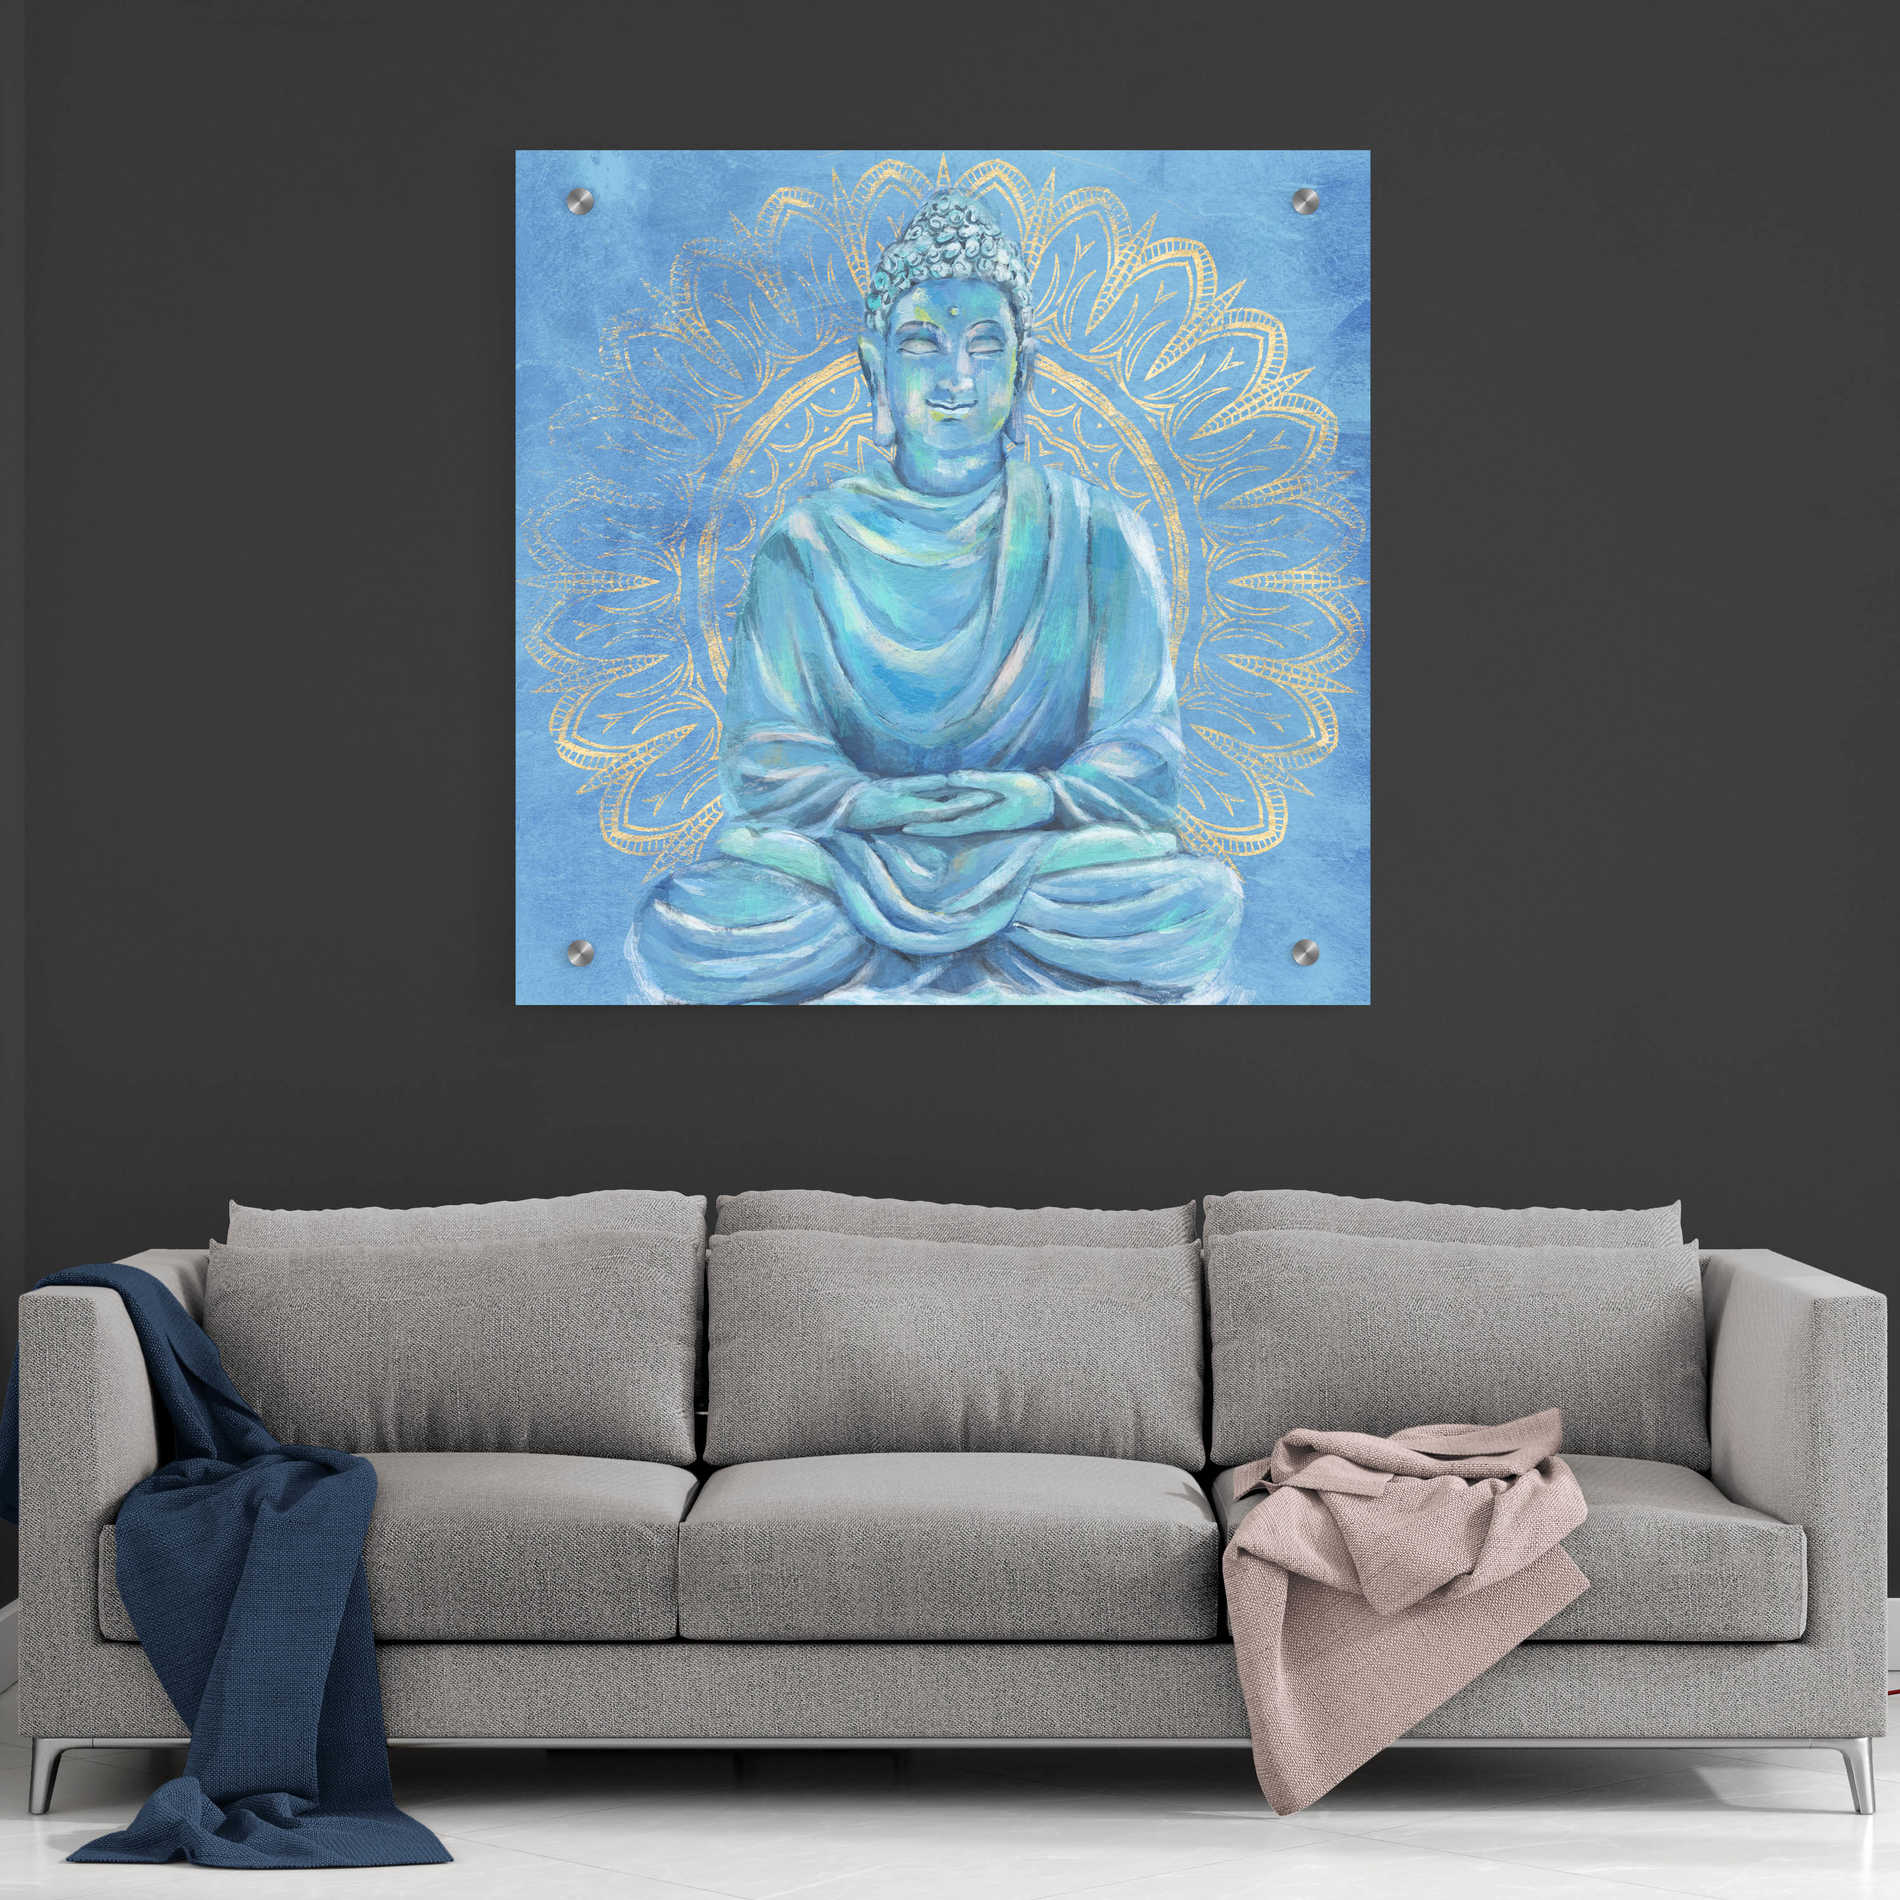 Epic Art 'Buddha on Blue I' by Annie Warren, Acrylic Glass Wall Art,36x36